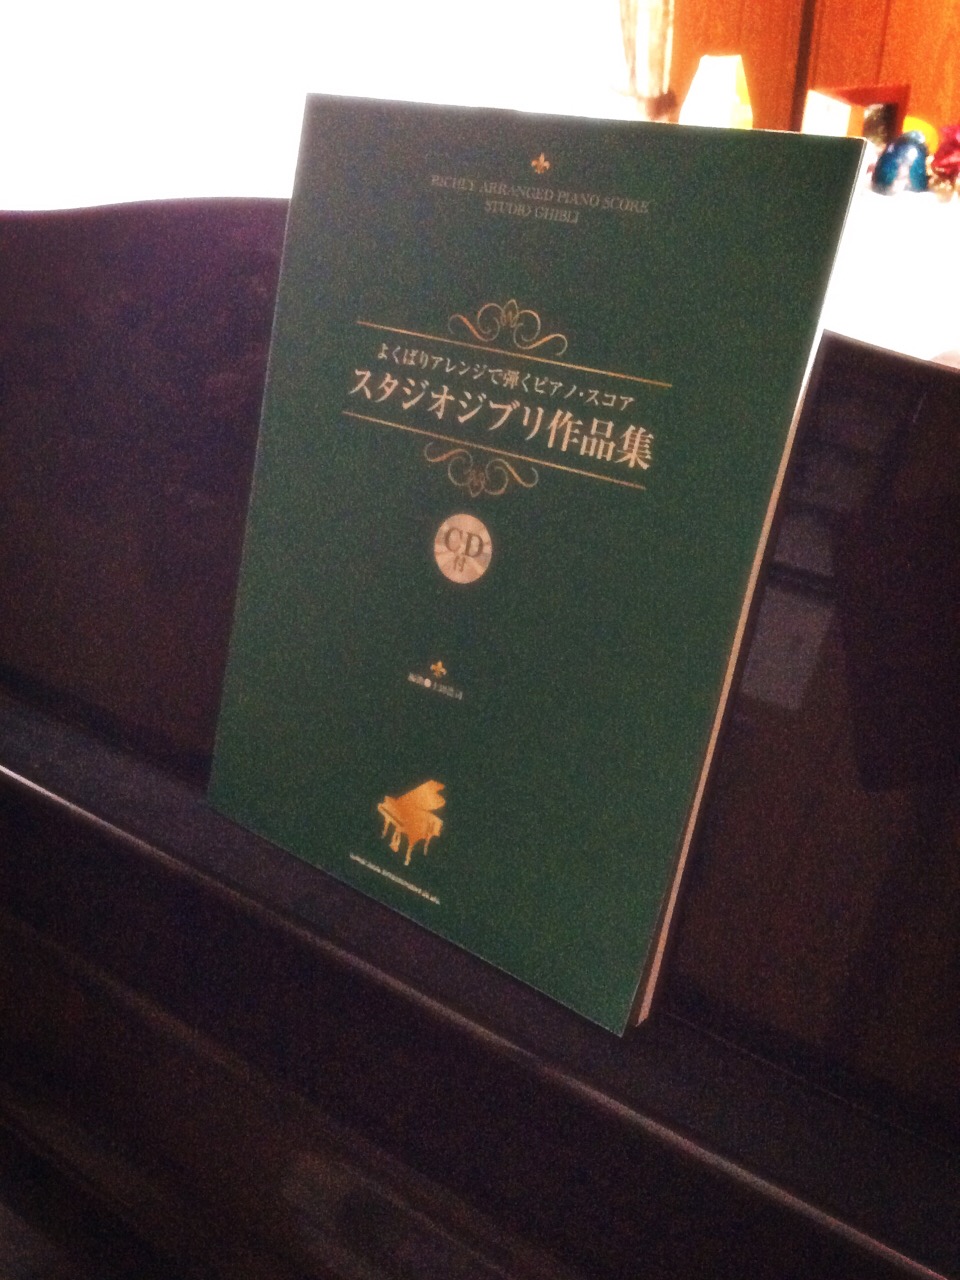 上田浩司よくばりアレンジで弾くピアノスコア/スタジオジブリ作品集 